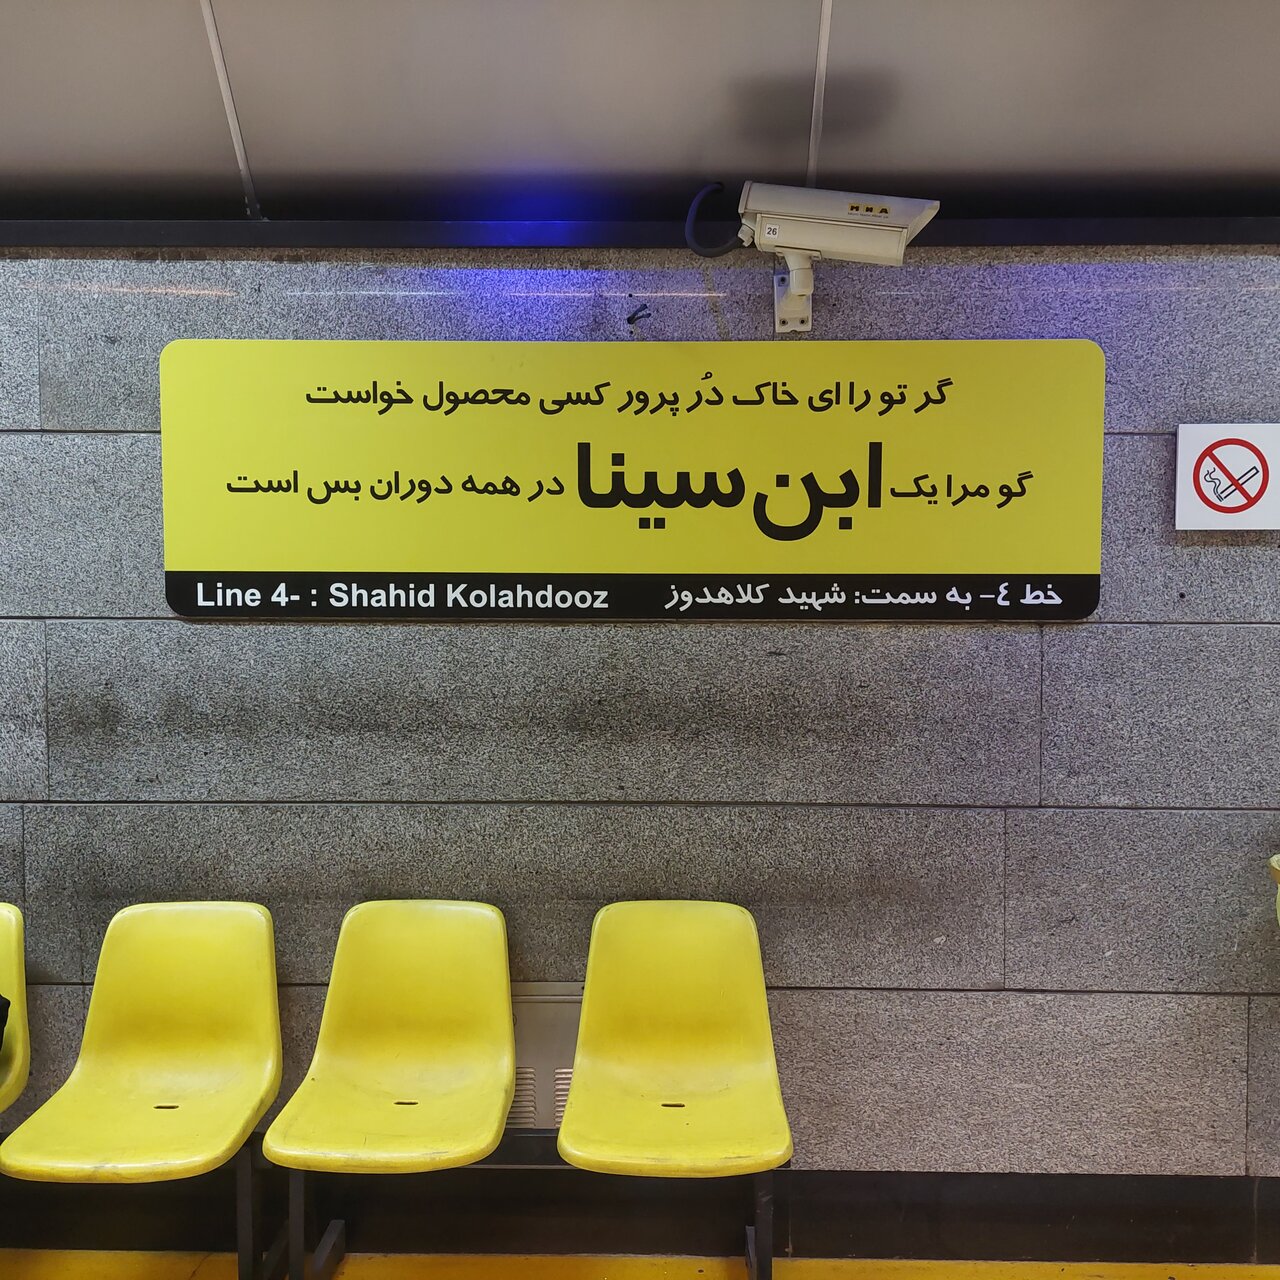 پشت پرده تغییر تابلوی ایستگاه های مترو در تهران | چرا تابلوهای ایستگاه ها با شعر جایگزین شده؟